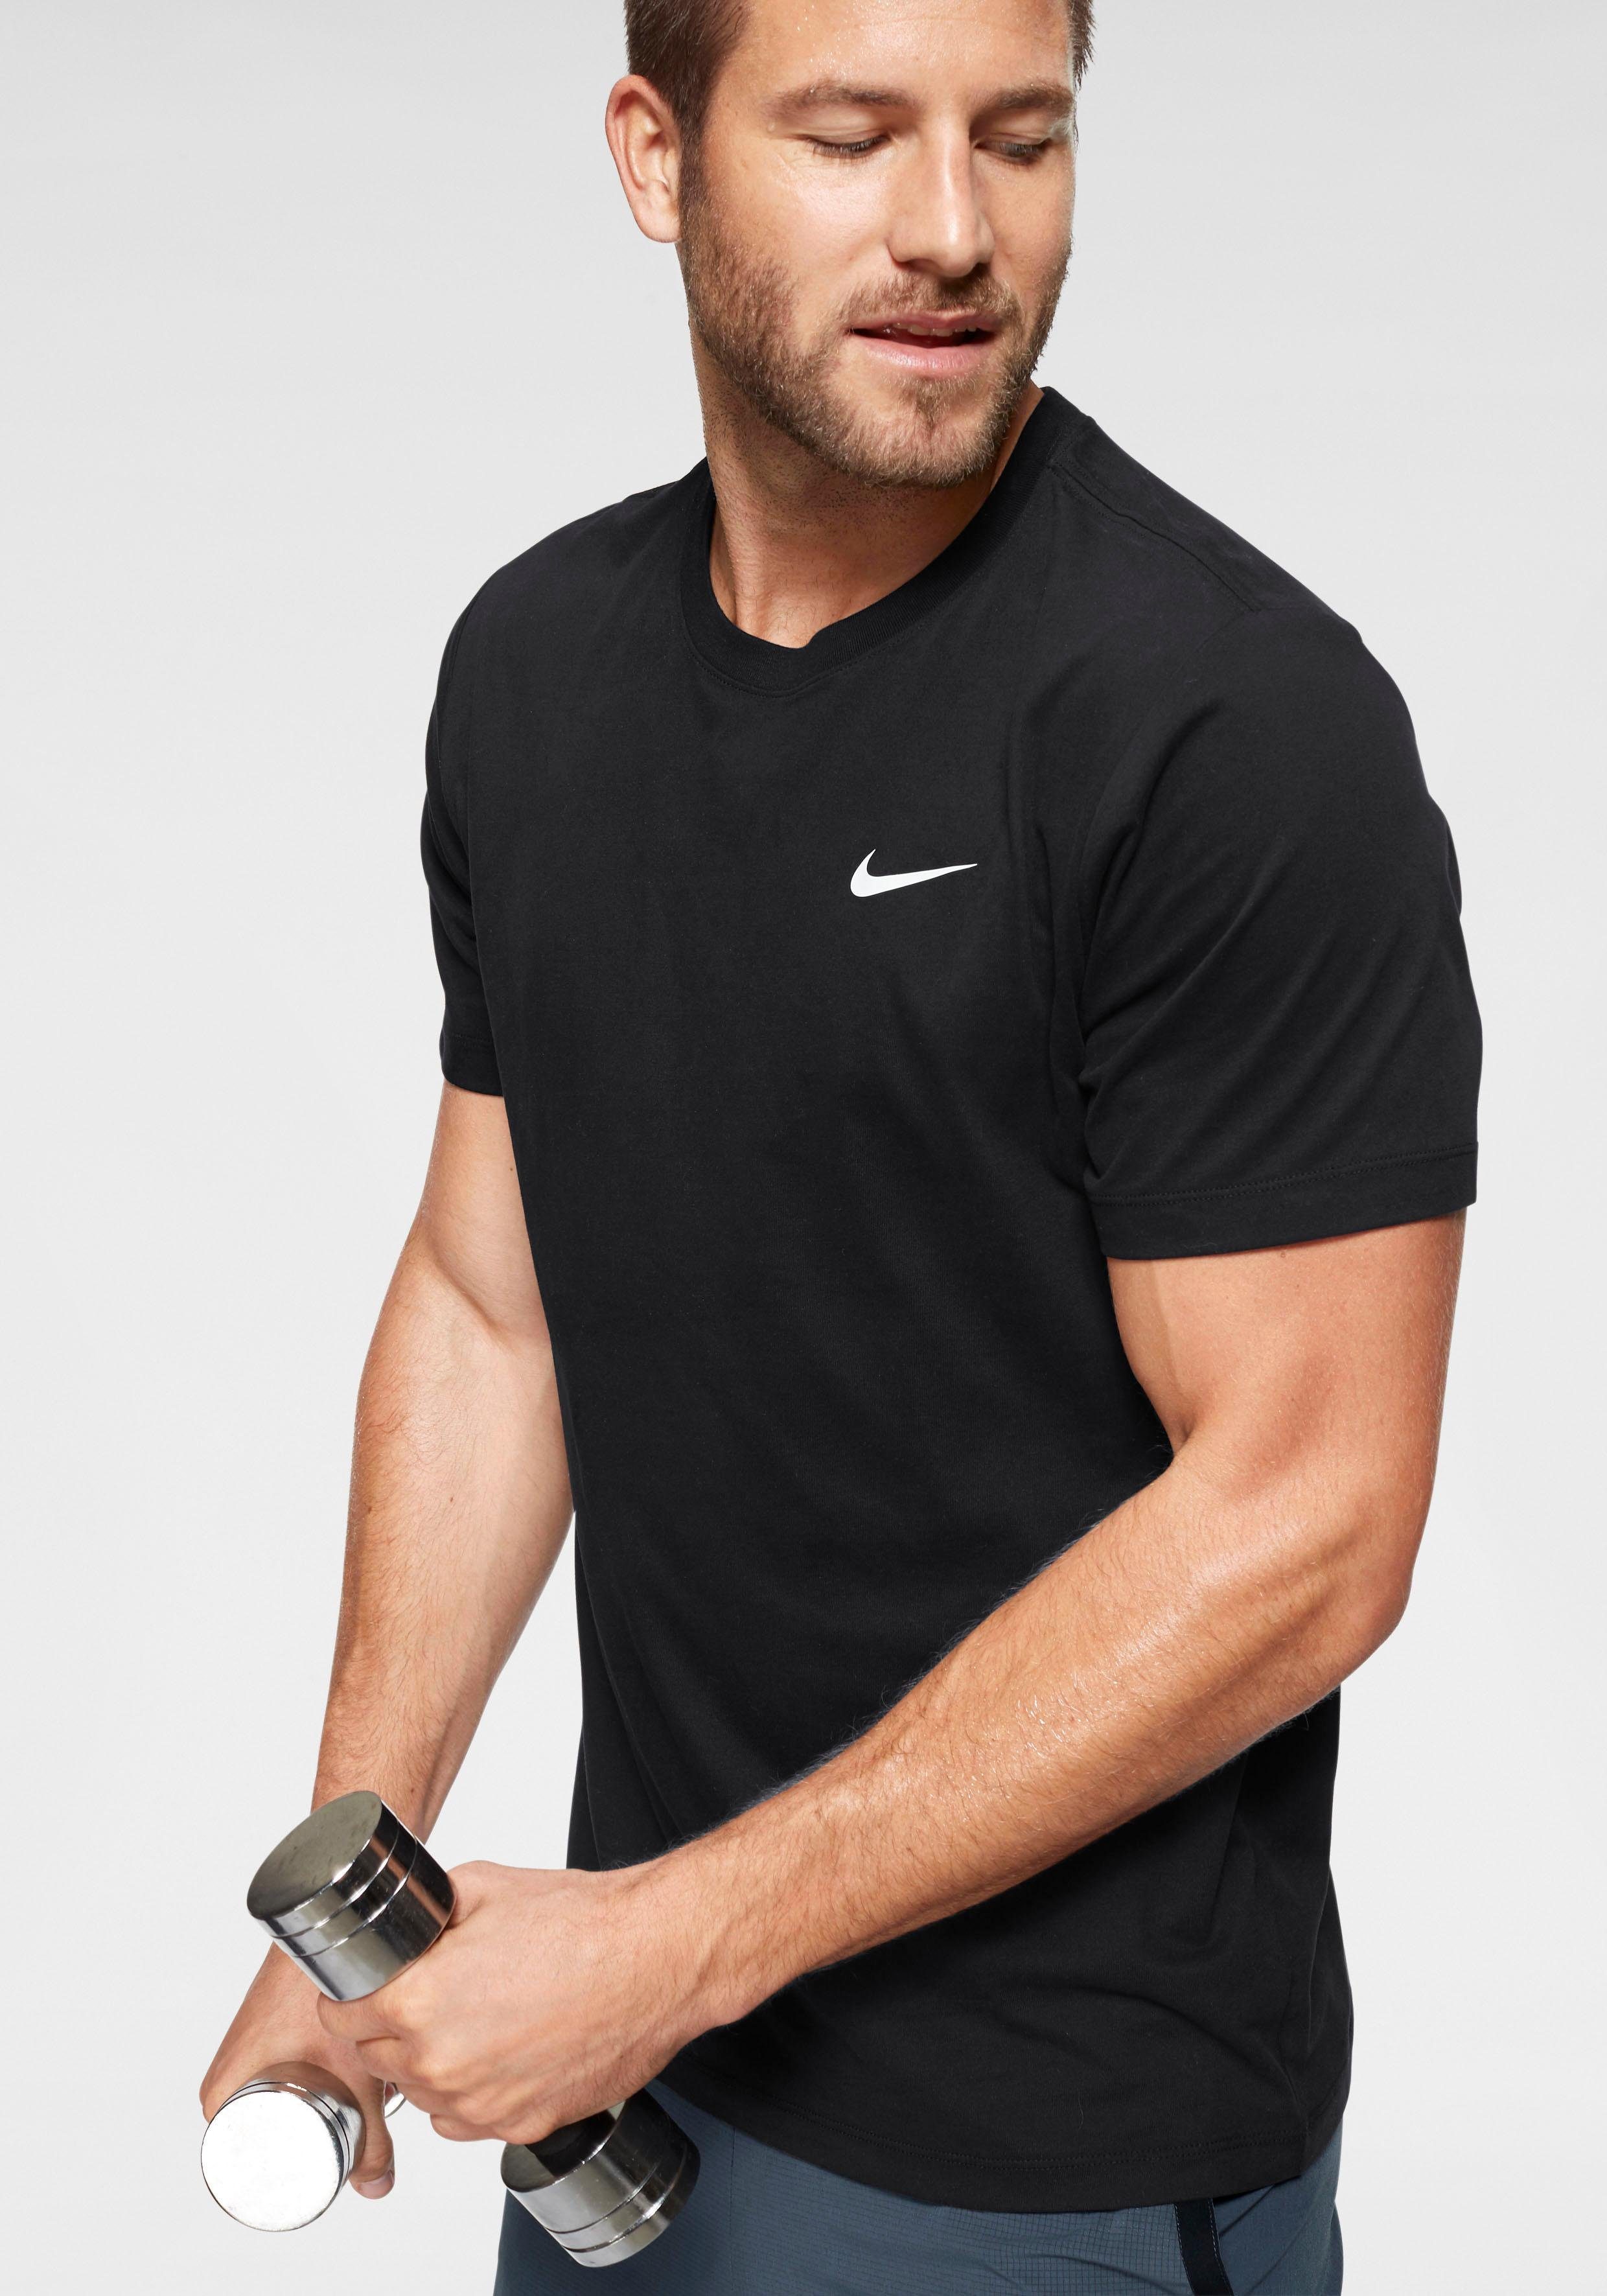 Nike Herren Sportshirts online kaufen | OTTO